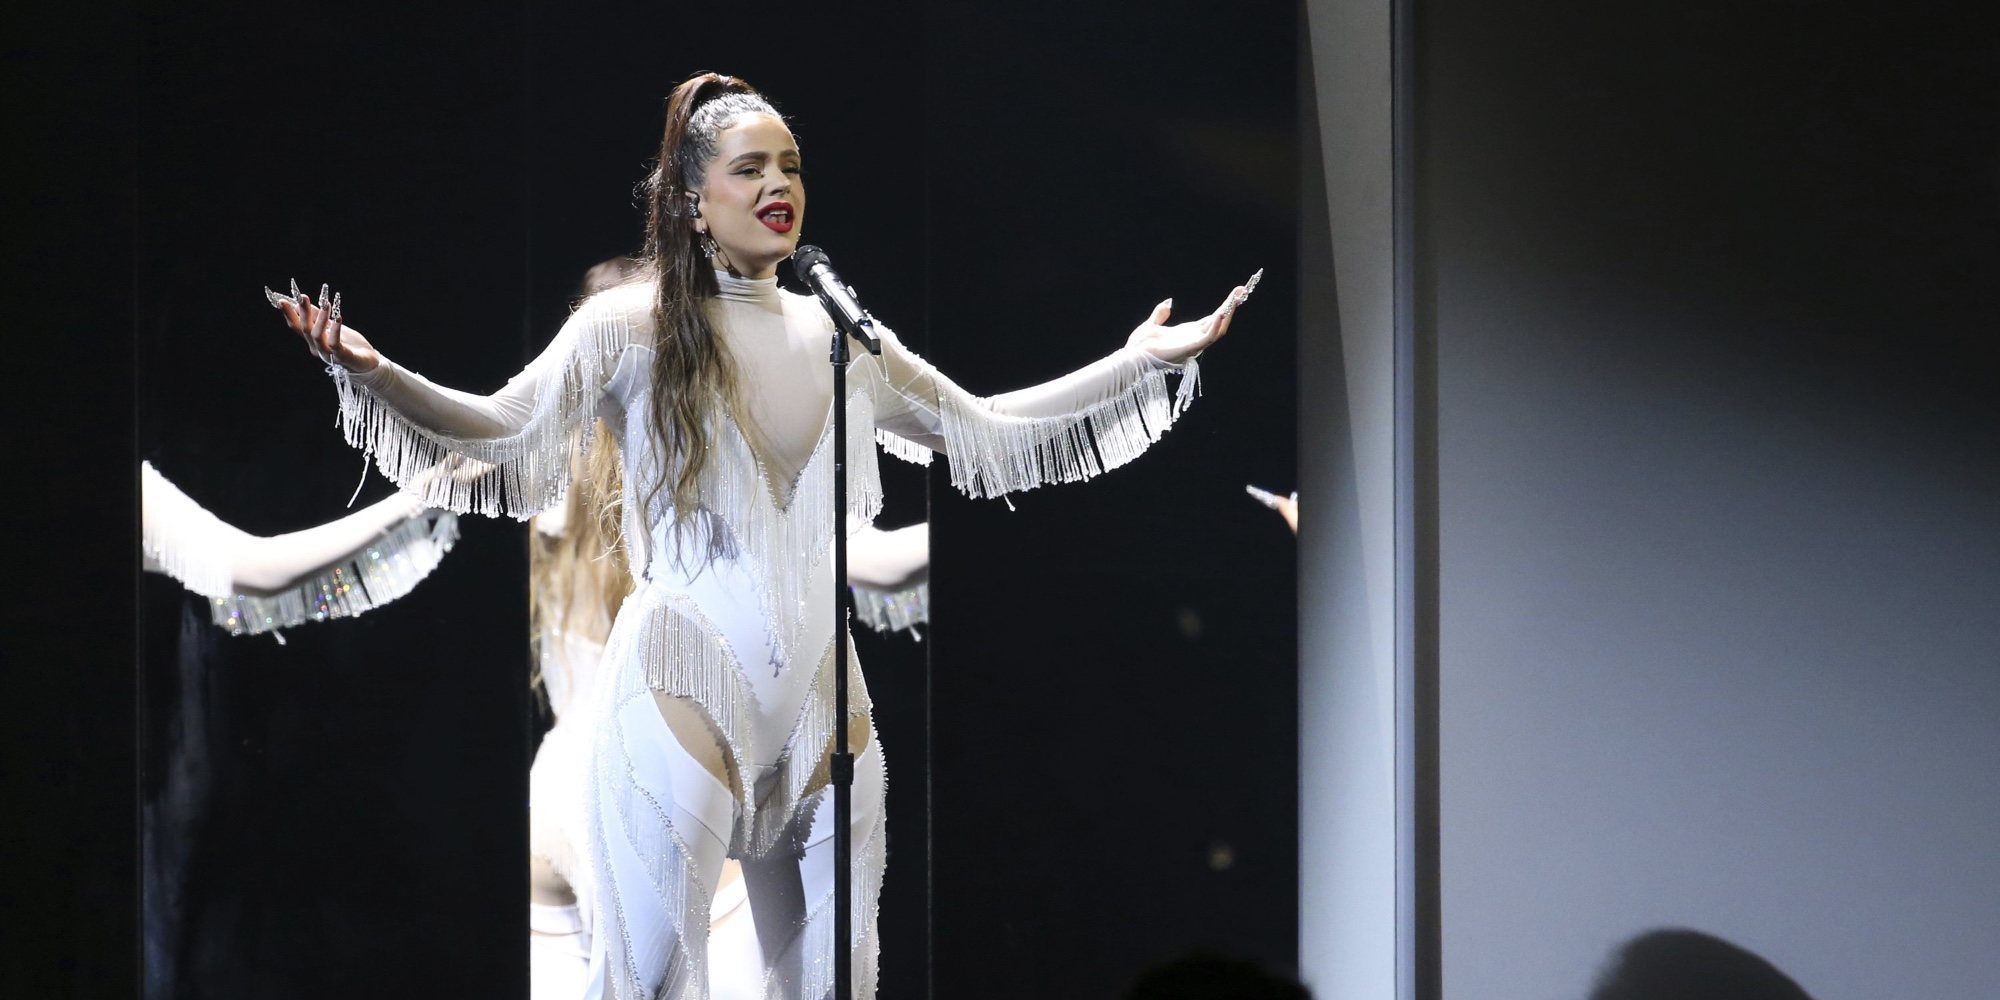 La criticada fiesta de Rosalía en un club striptease con billetes volando para celebrar los Grammy 2020